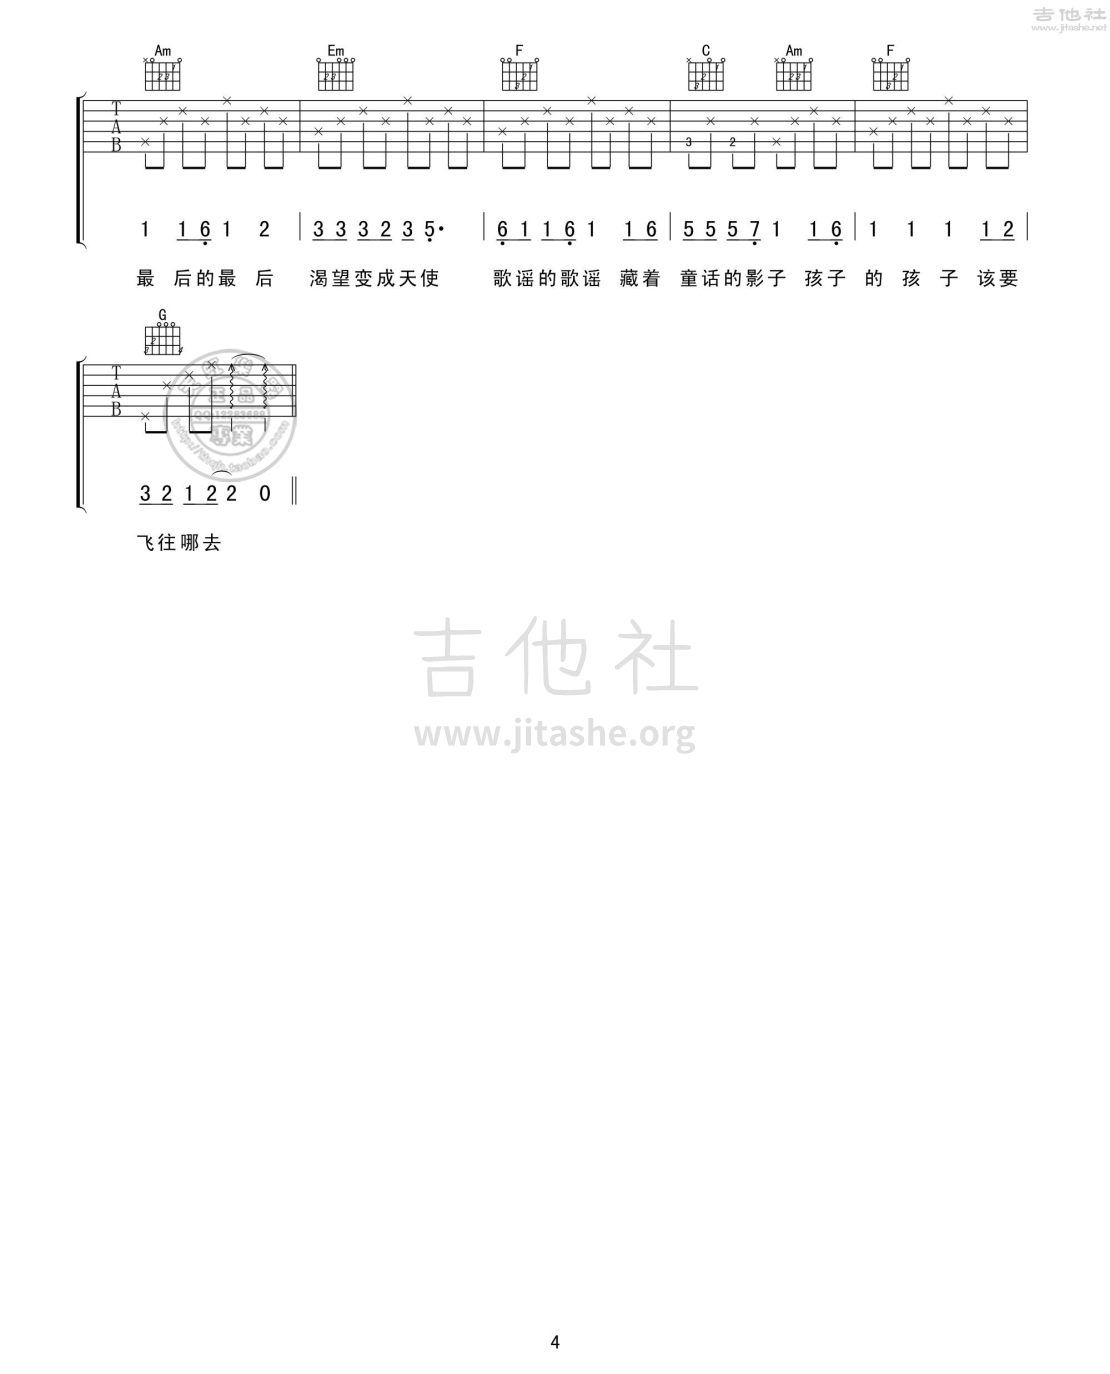 打印:北京东路的日子吉他谱_群星(Various Artists)_北京东路的日子04.jpg